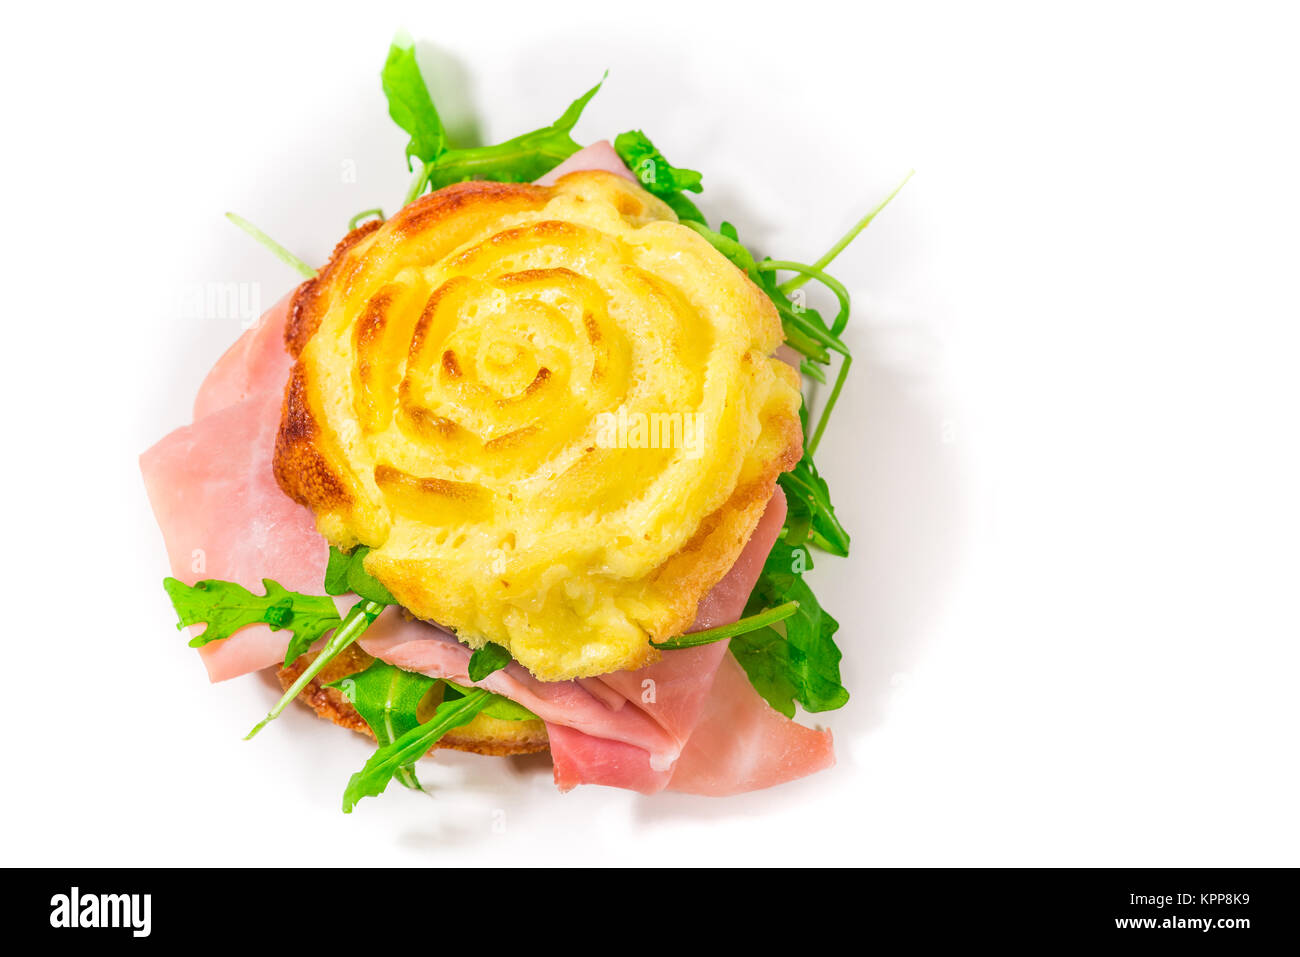 Frittata farci, cuit dans le four à micro-ondes, en forme de rose, avec salade de roquette et jambon cuit (ingrédients : oeufs, la crème, le sel, l'emmental) Banque D'Images